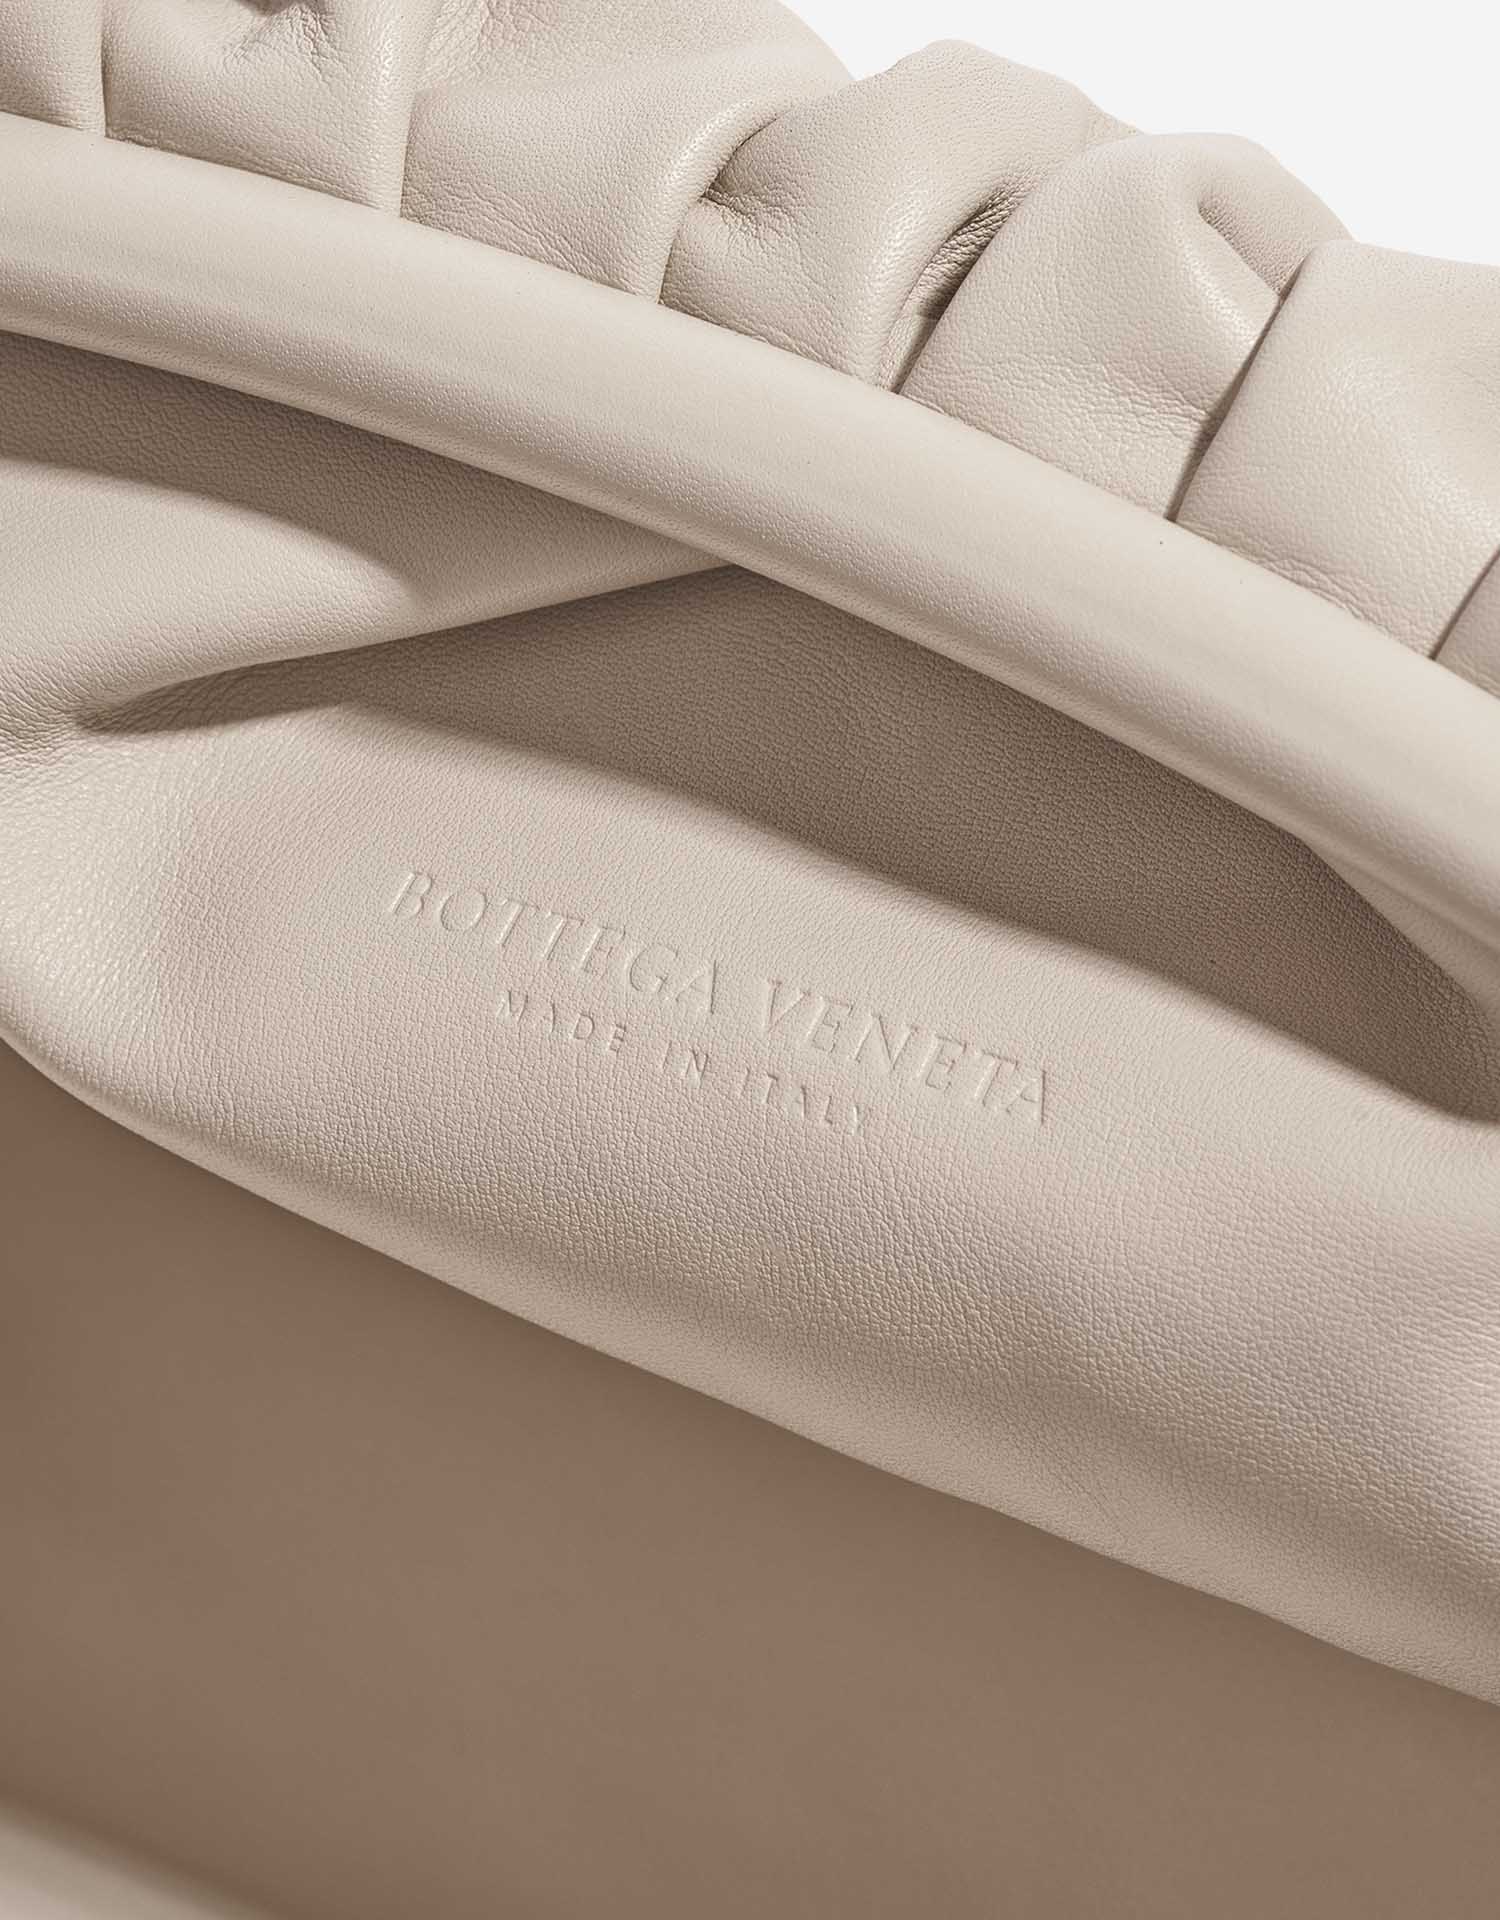 Pre-owned Bottega Veneta Tasche Pouch Kalbsleder Plaster Beige Logo | Verkaufen Sie Ihre Designer-Tasche auf Saclab.com